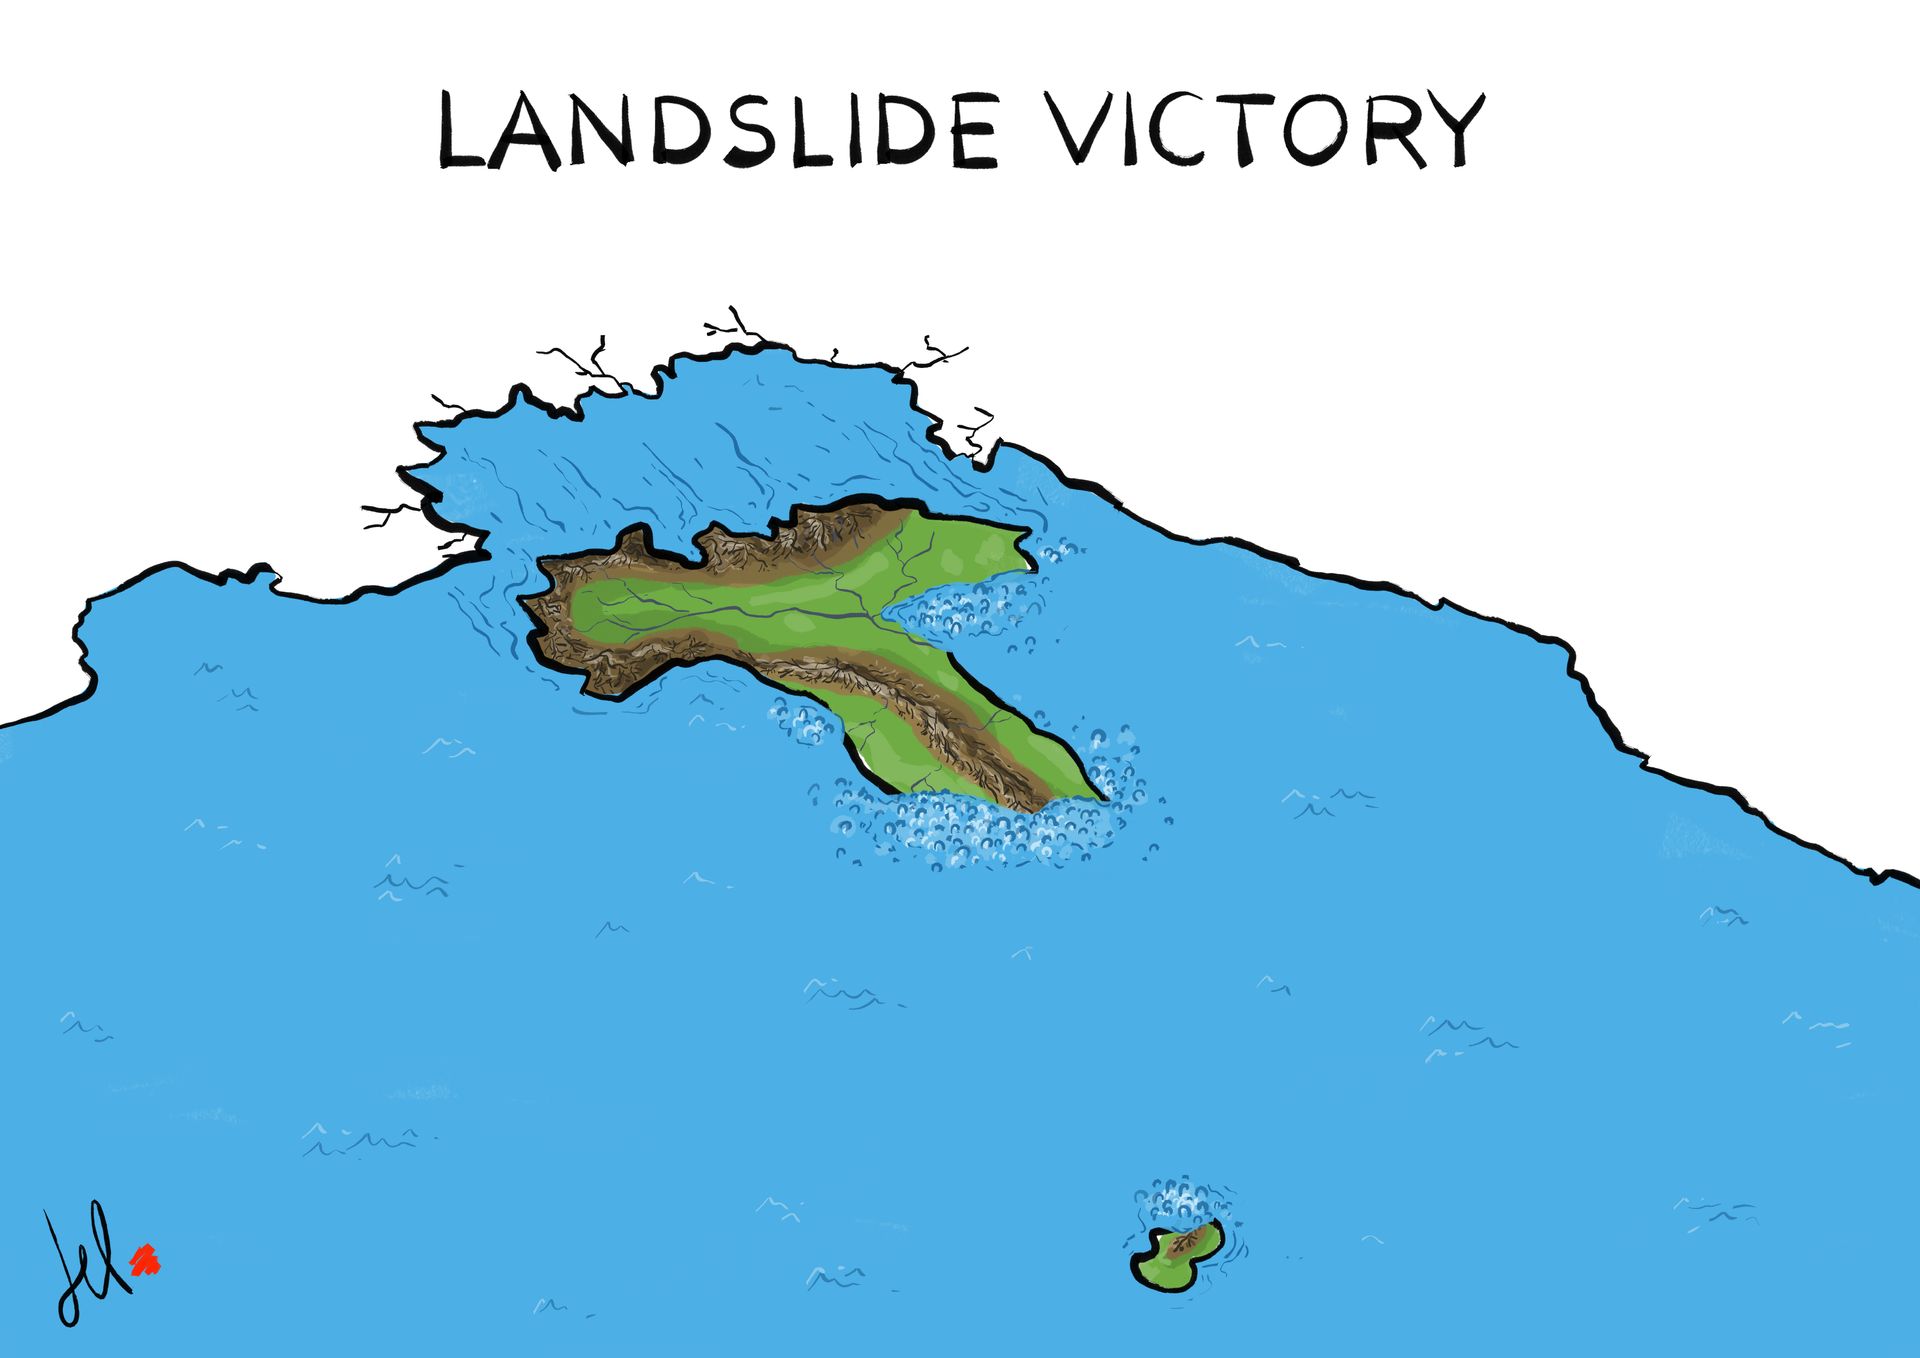 Landslide victory - Del Rosso